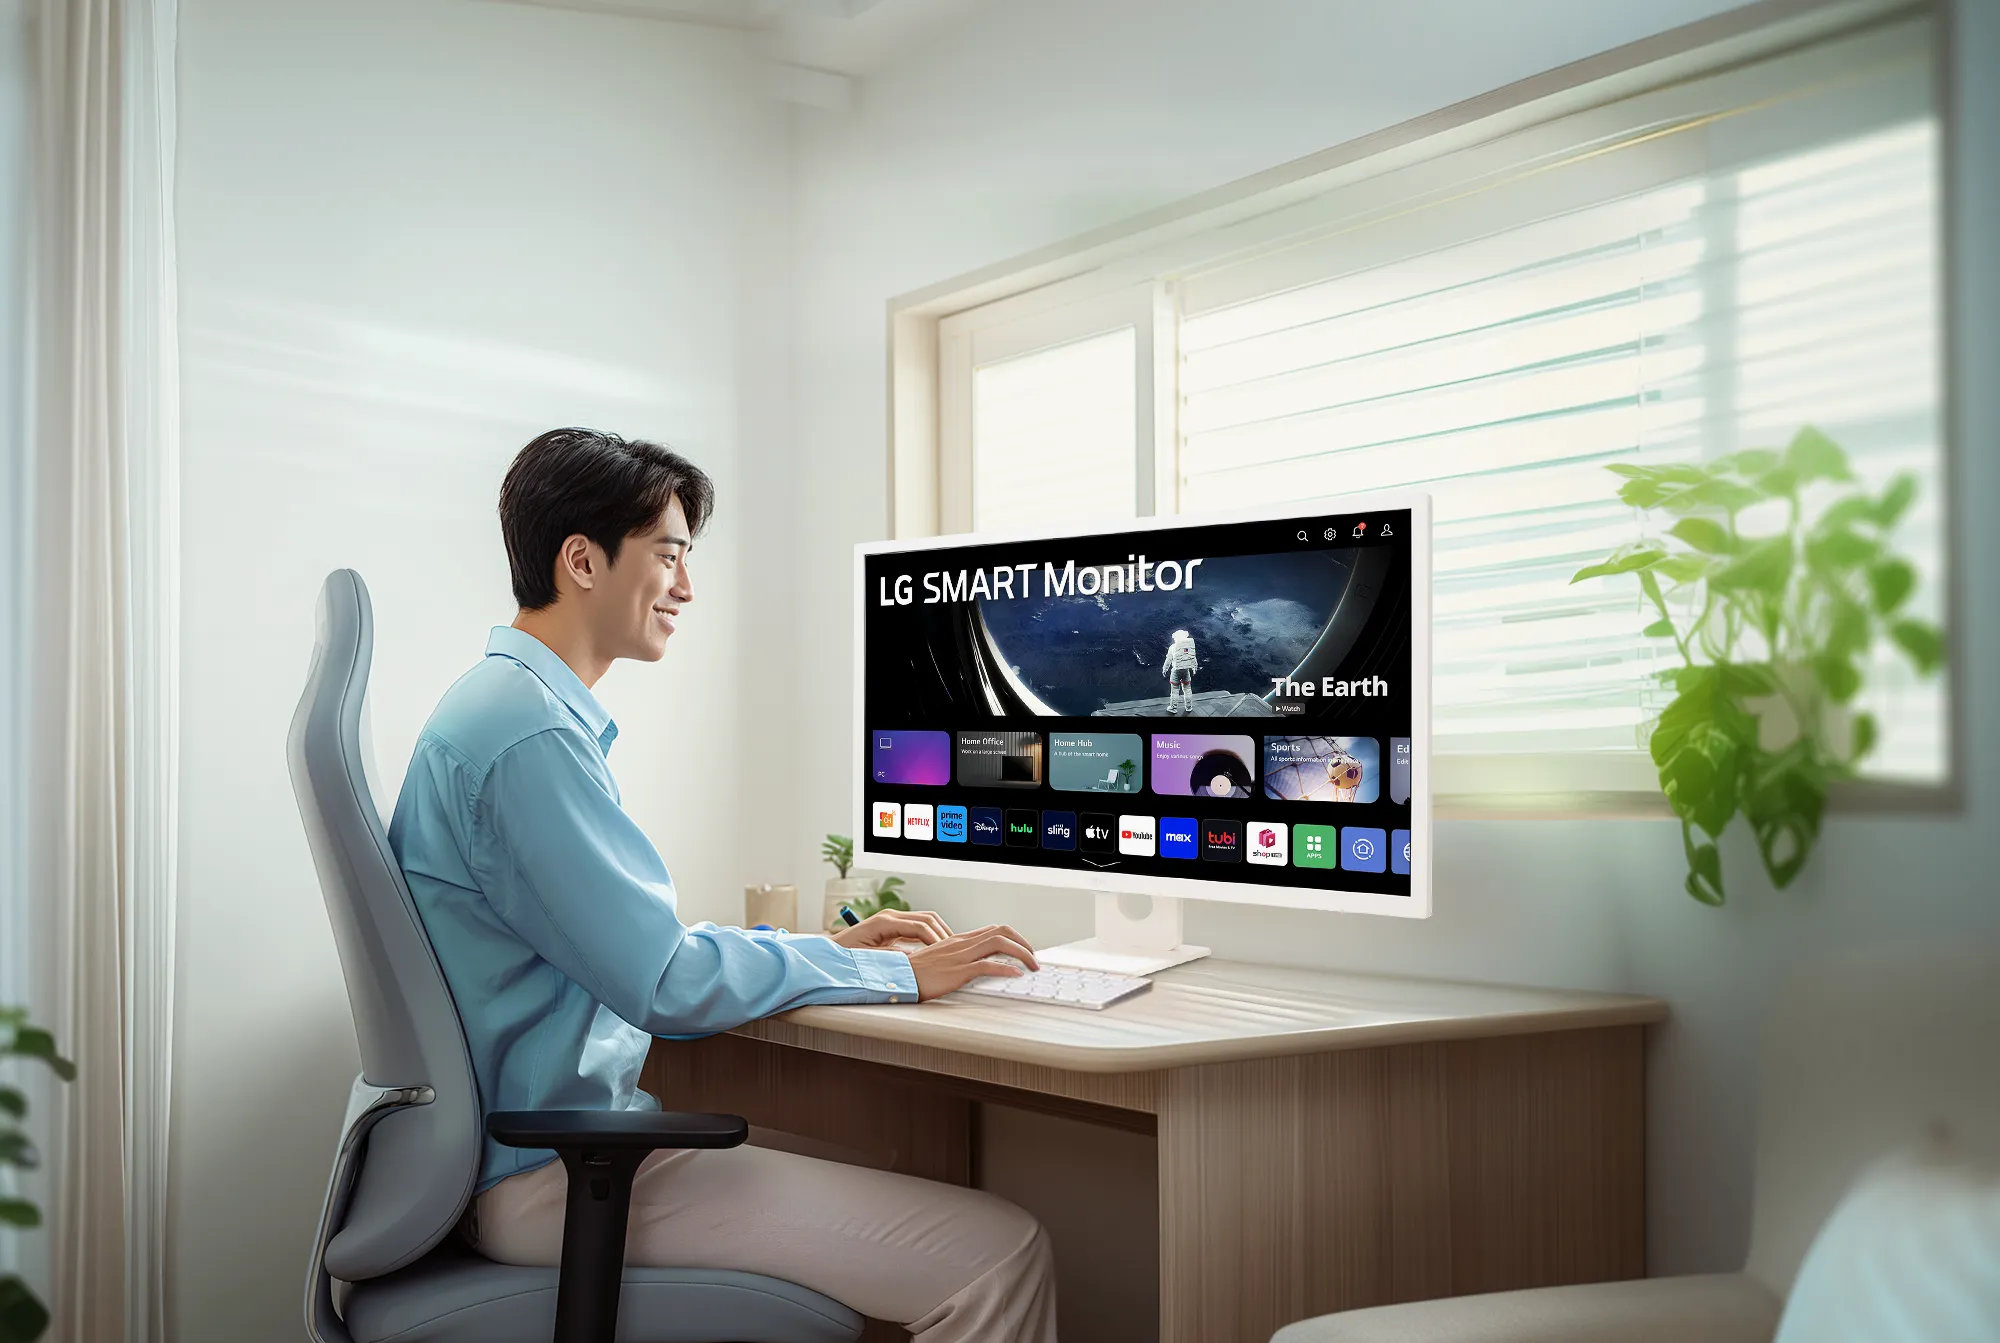 LG giới thiệu màn hình thông minh LG Smart Monitor – Nâng tầm cuộc sống hiện đại, làm việc và giải trí linh hoạt